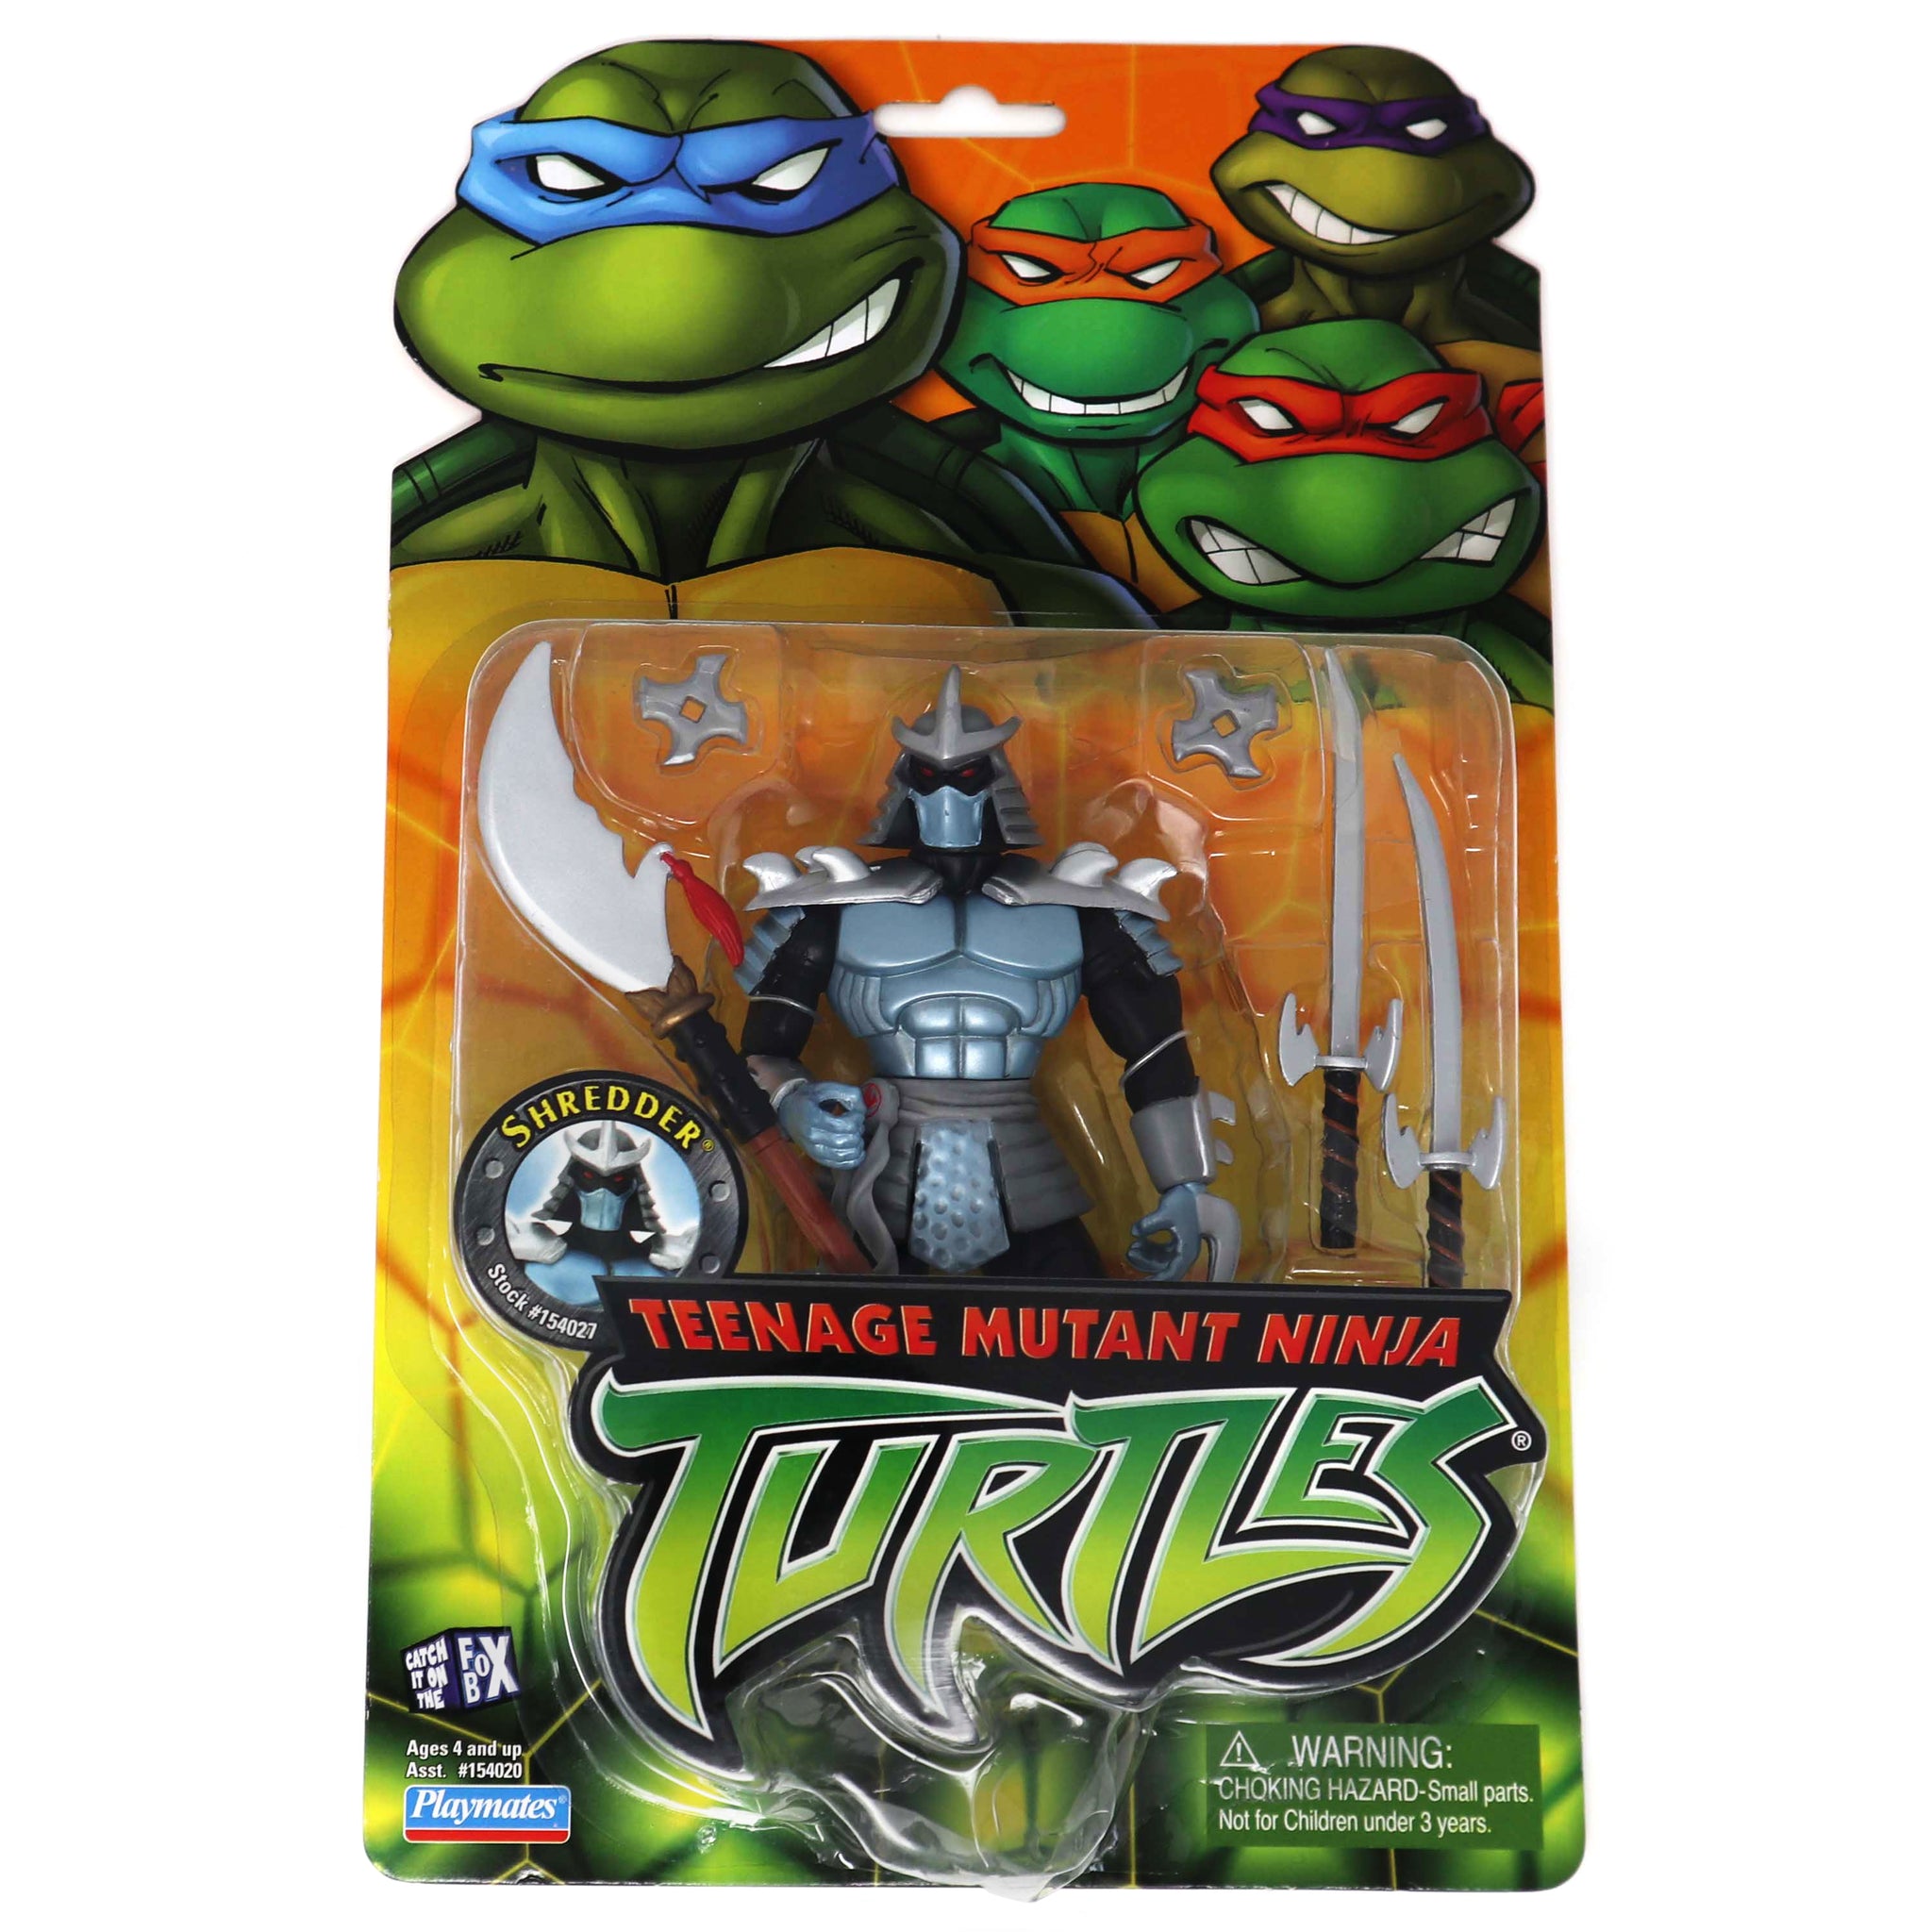 2002 Playmates Toys Teenage Mutant Ninja Turtles (TMNT) Modern Series Shredder Action Figure Carded MOC